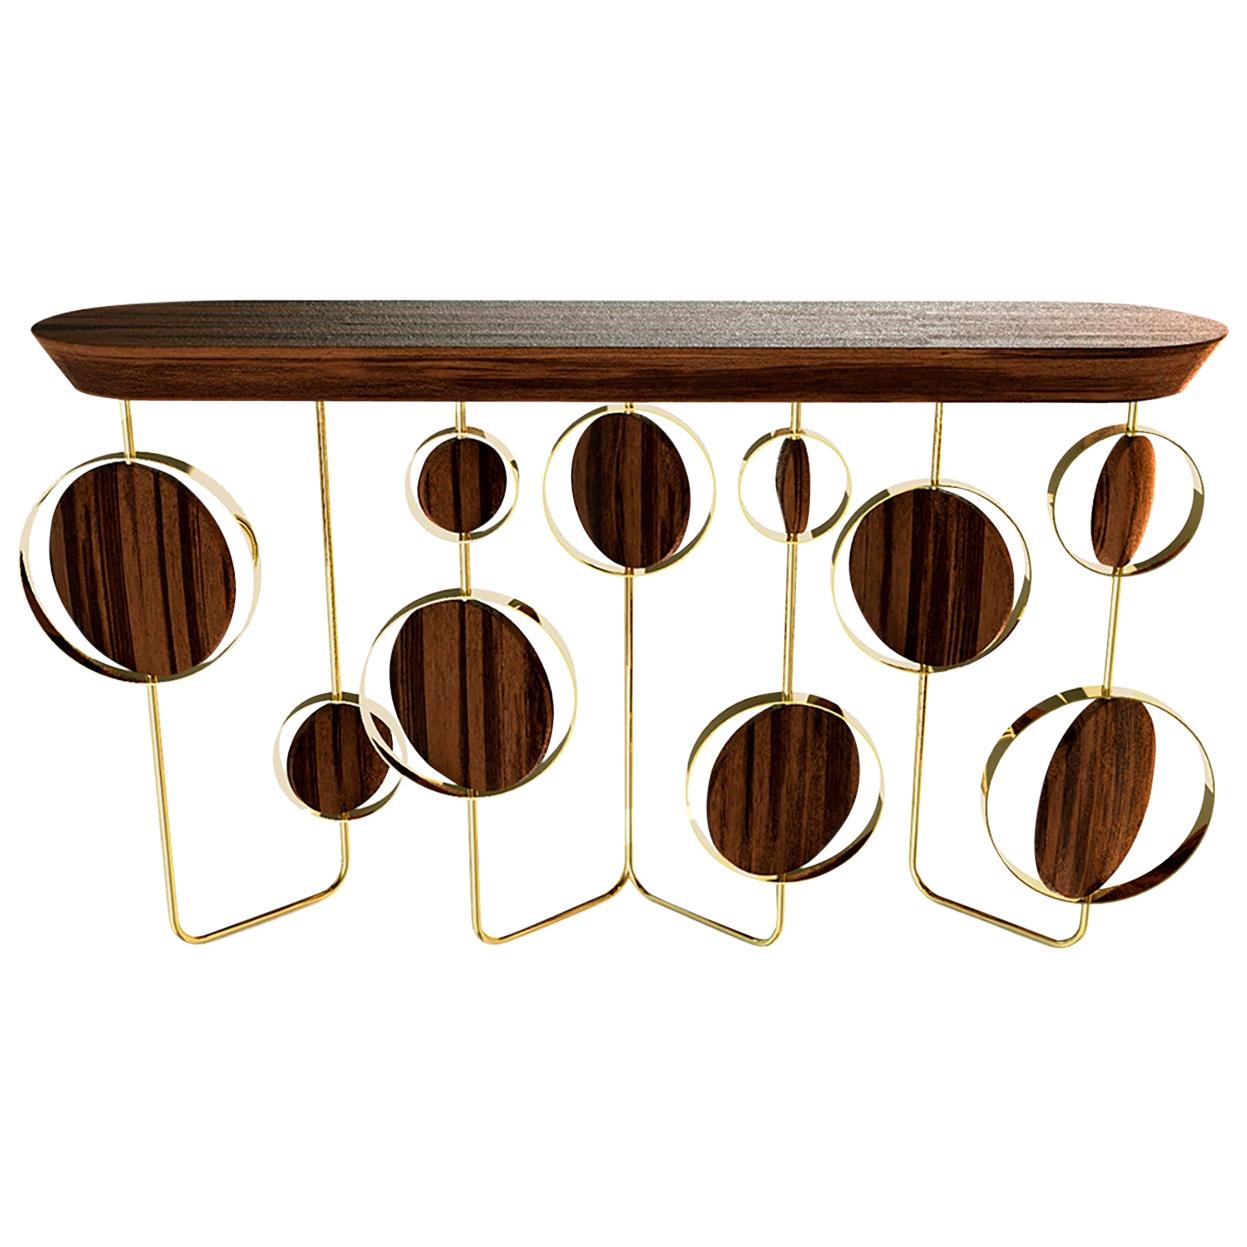 Lussuoso tavolo consolle moderno "Circle" in noce, Wood e ottone